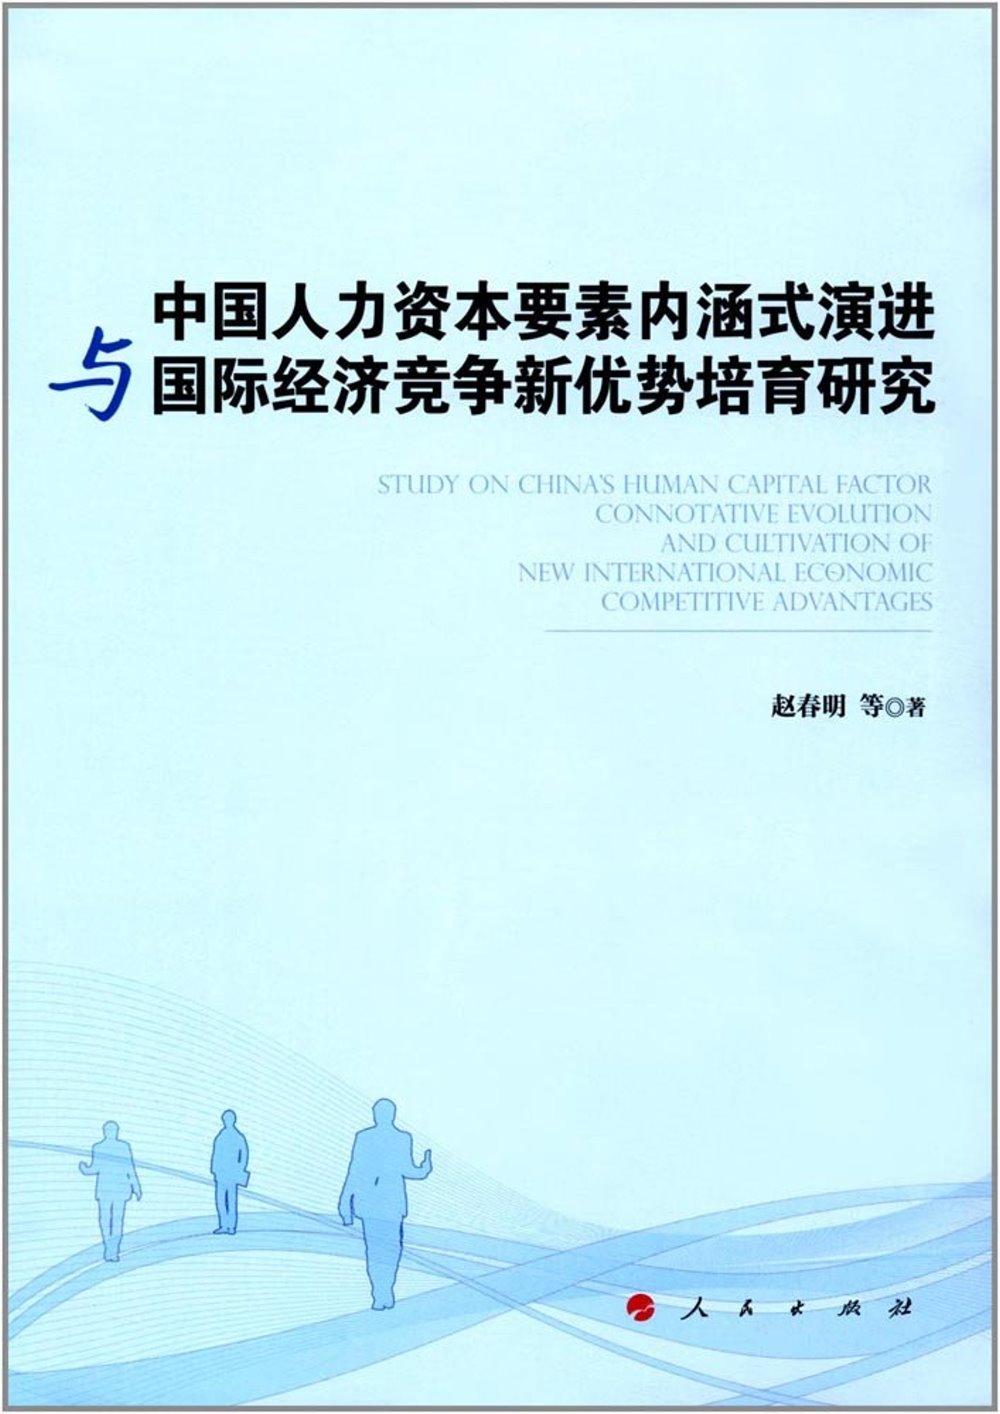 中國人力資本要素內涵式演進與國際經濟競爭新優勢培育研究